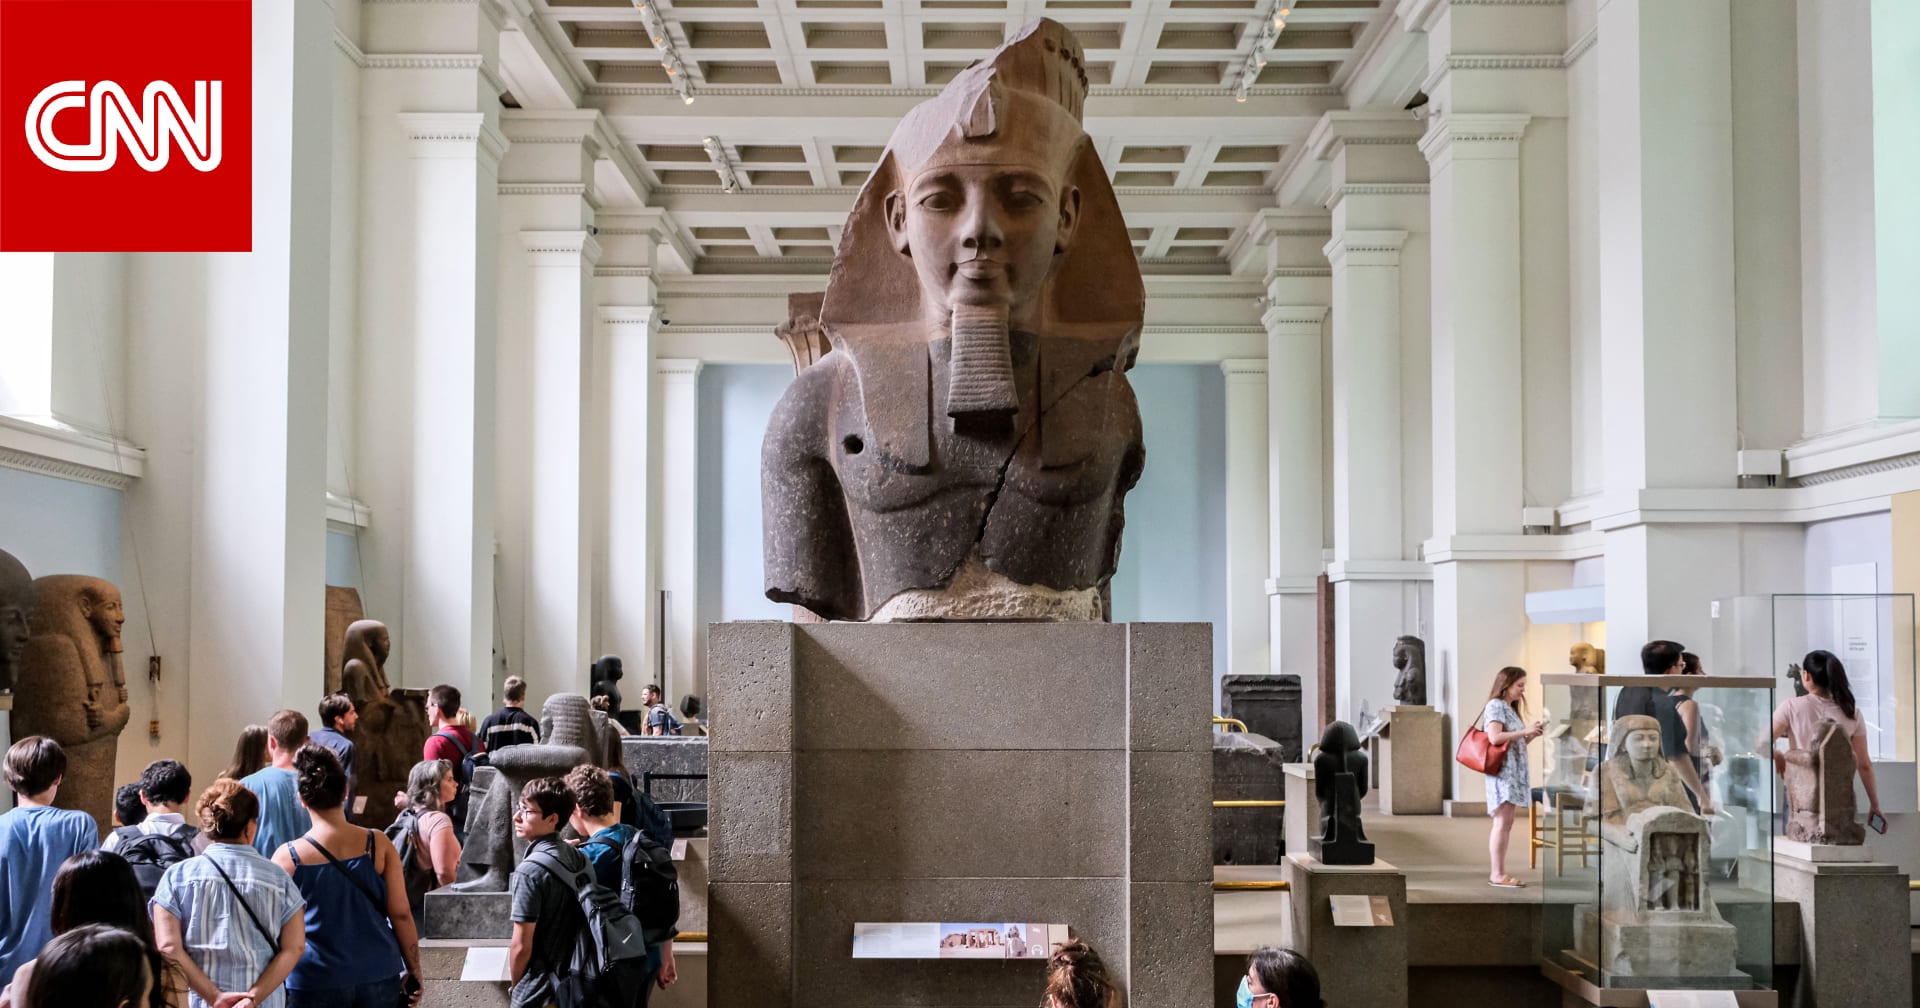 "عُرضت في لندن ووصلت سويسرا".. مصر تتسلم رأس تمثال للملك رمسيس الثاني بعد سرقتها